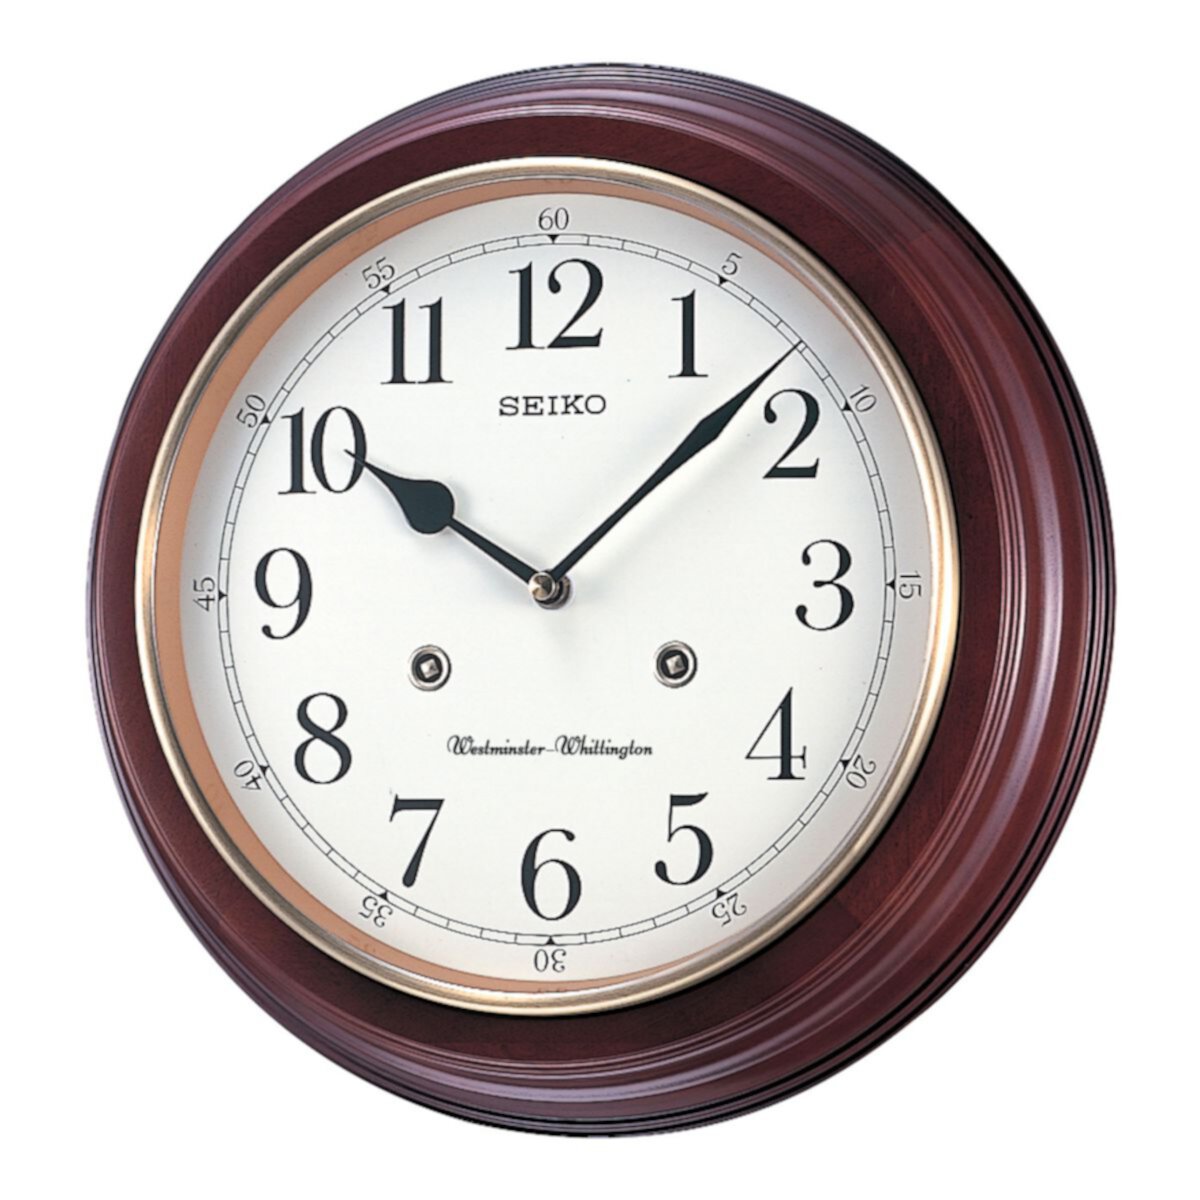 Seiko 12 & # 34; Круглые настенные часы с отделкой из дерева Seiko